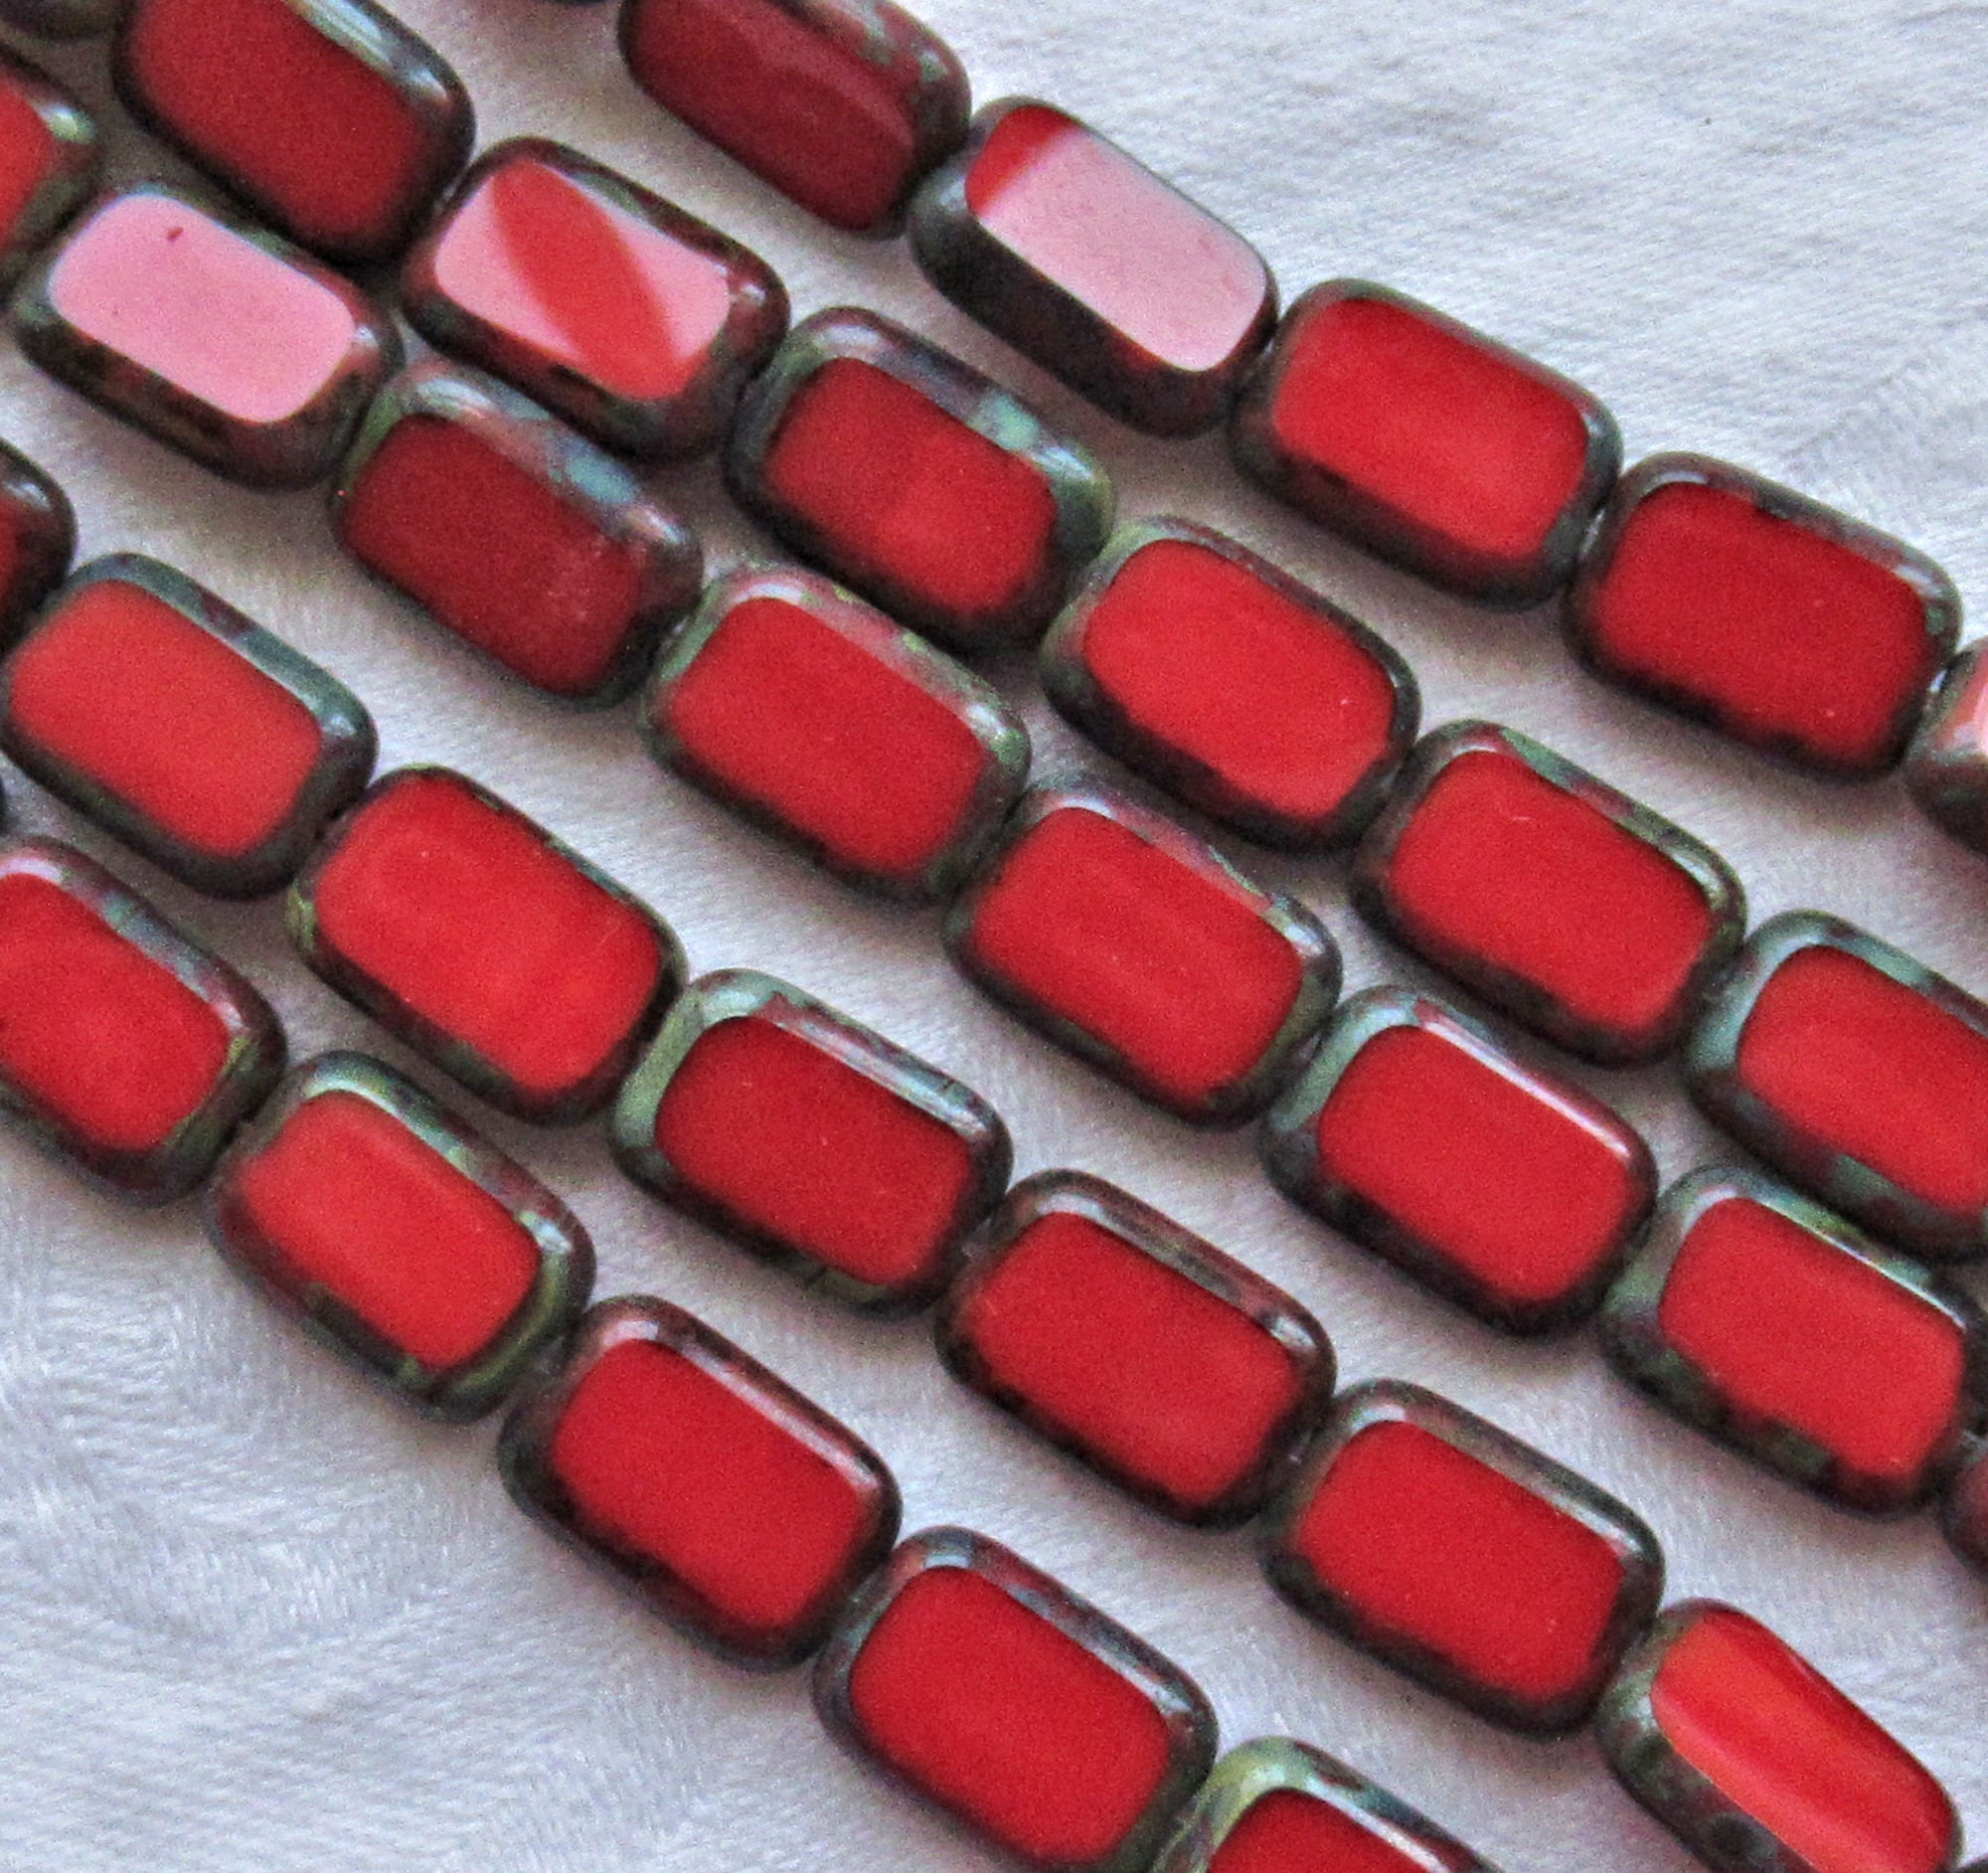 Lot of 24 rectangular Czech glass beads -table cut opaque bright